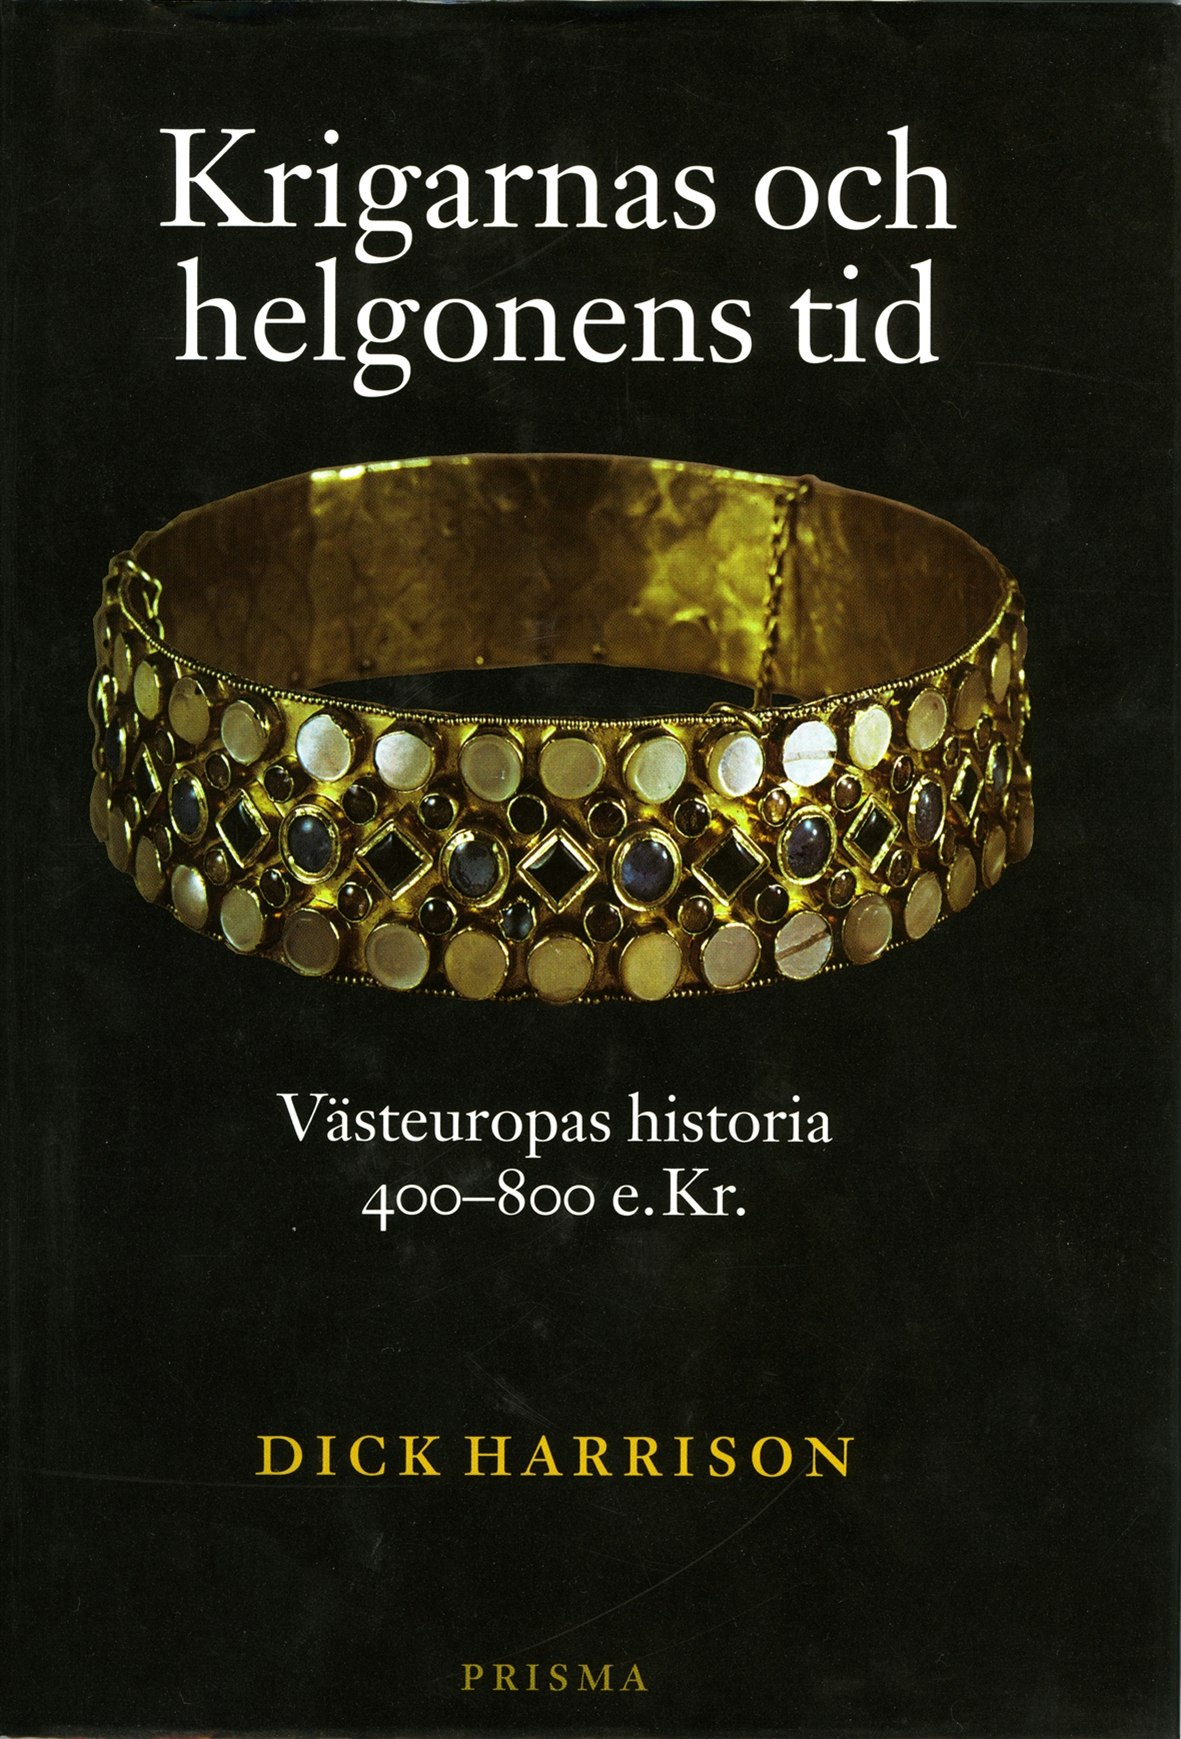 Krigarnas och helgonens tid : Västeuropas historia 400-800 e.Kr